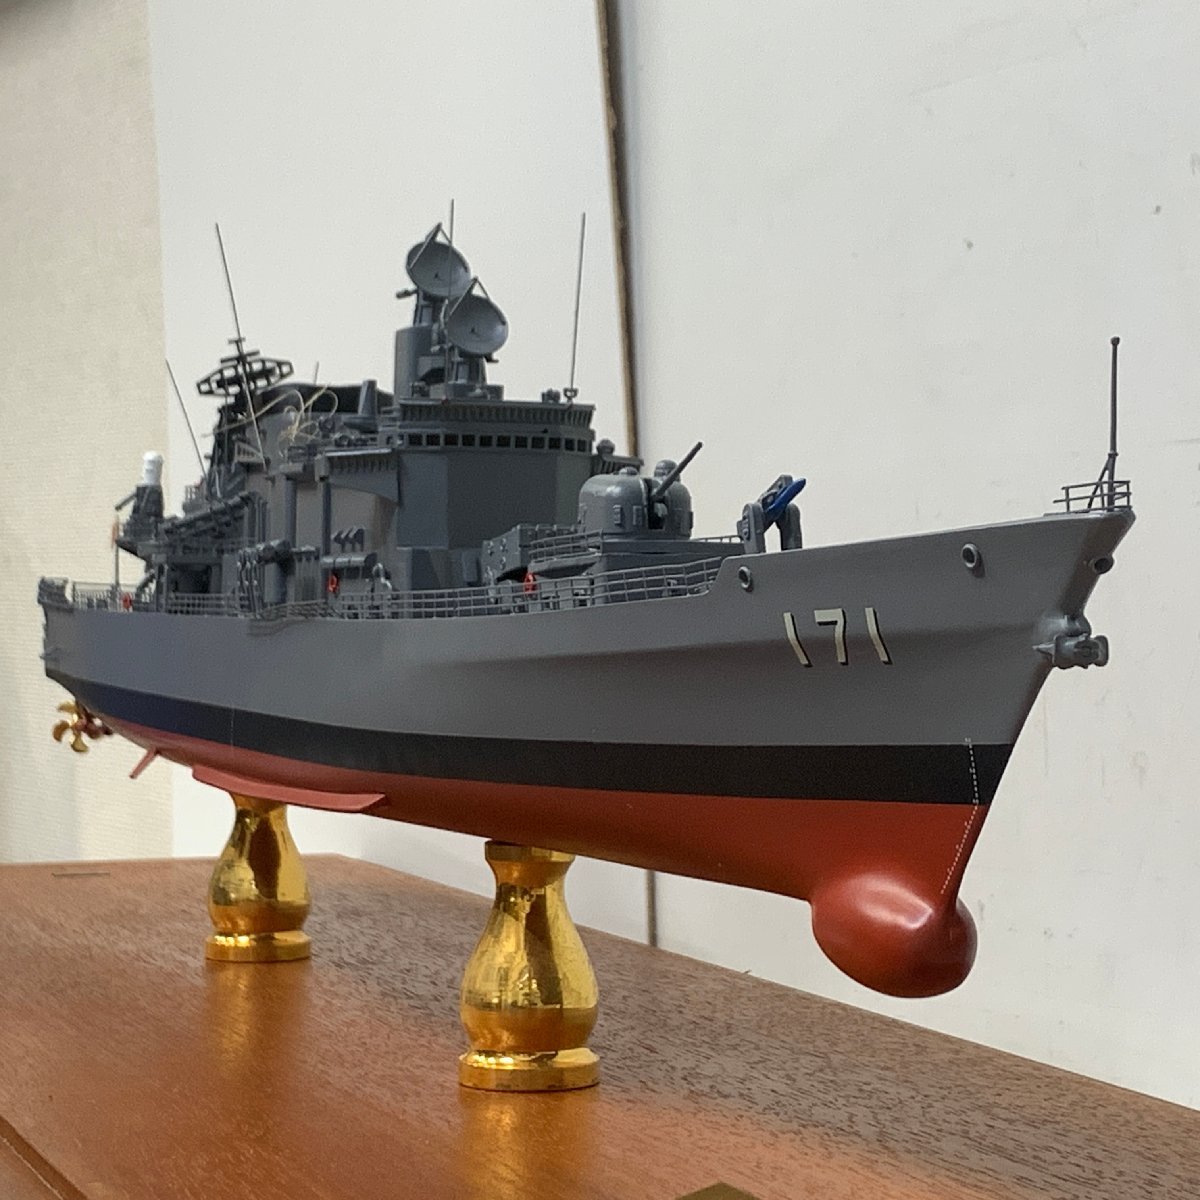 小西製作所 はたかぜ 1/200 戦艦模型 海上自衛隊護衛艦 KONISHI